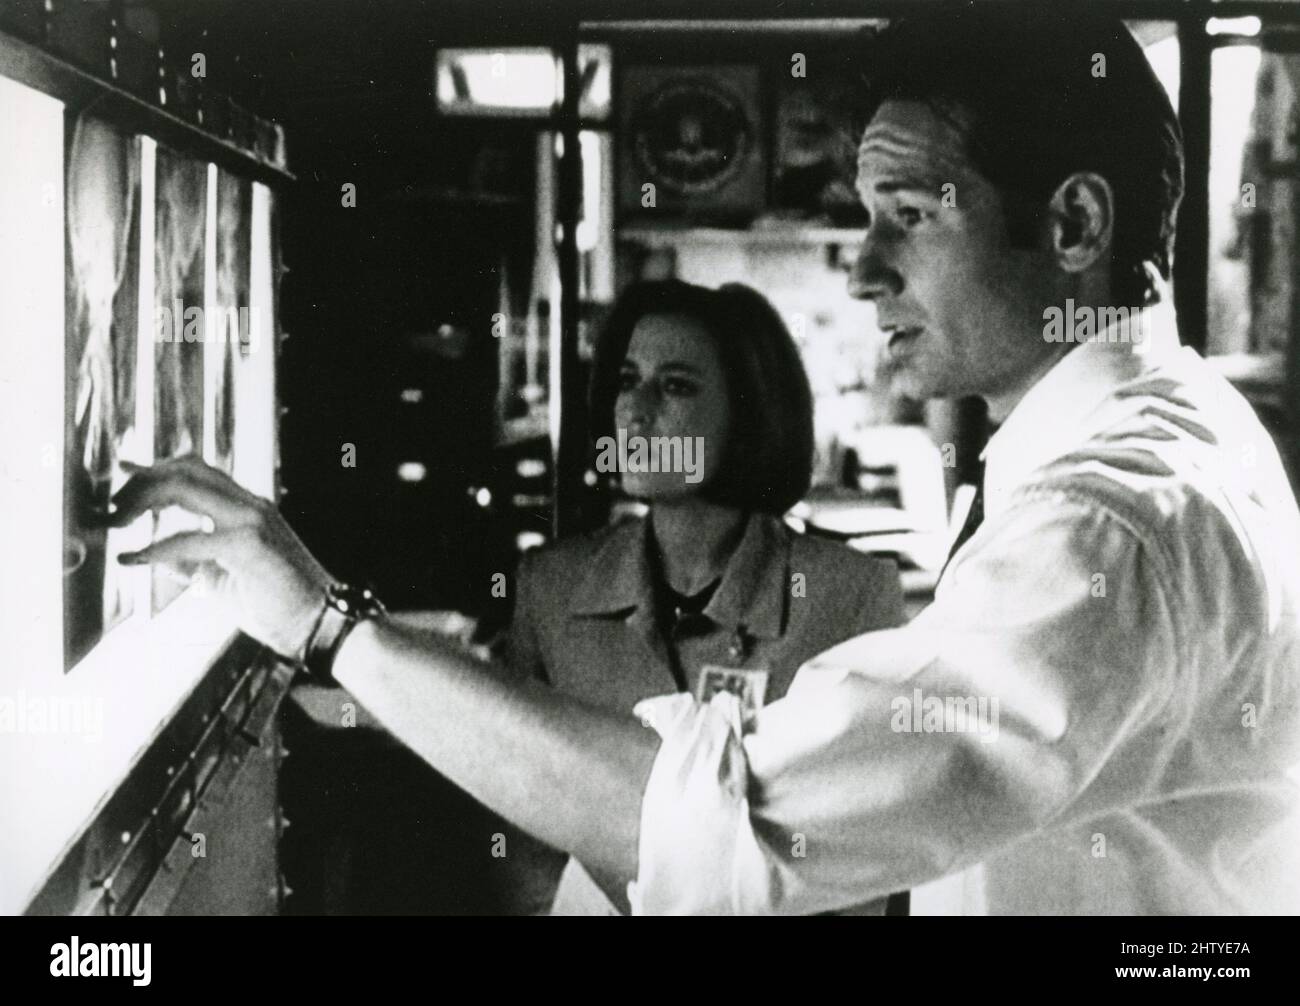 El actor David Duchovny y la actriz Gillian Anderson en las películas de televisión X-Files, USA 1997 Foto de stock